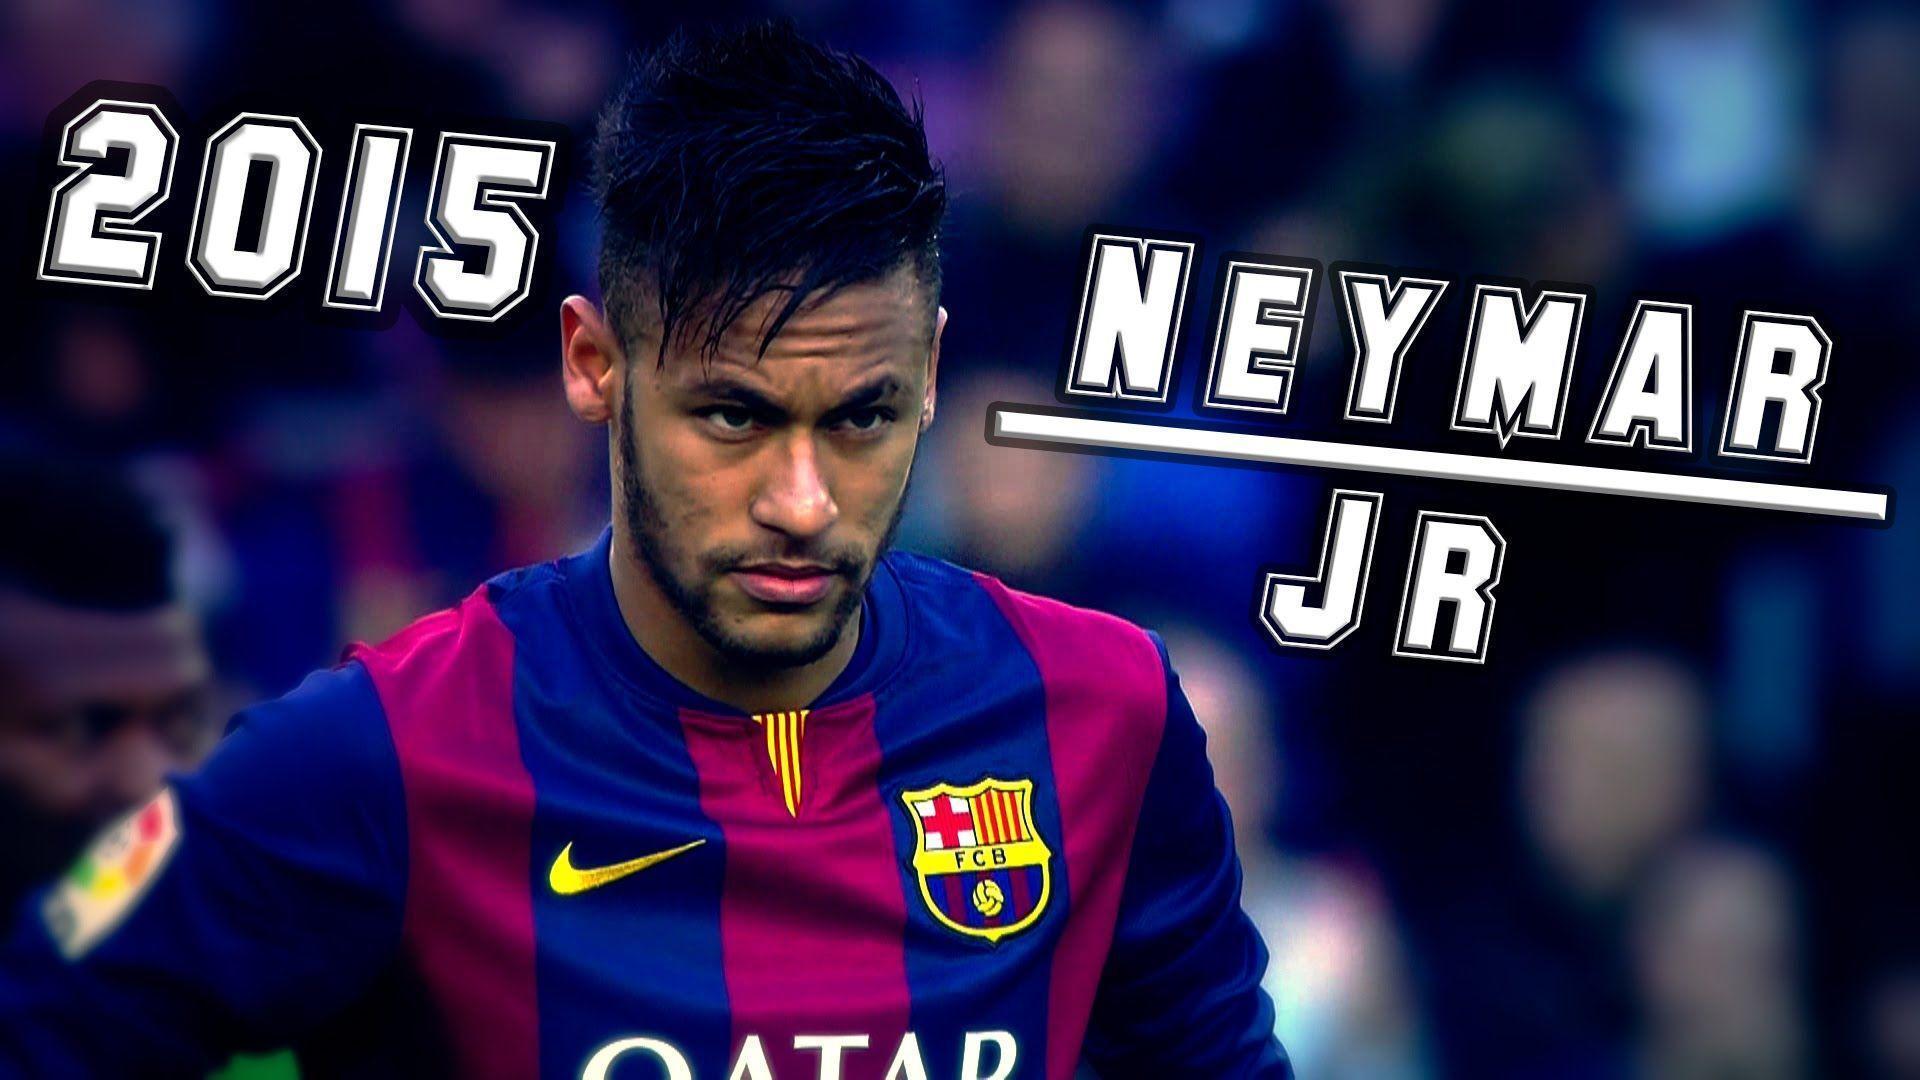 Neymar Jr ► Slow Down ● Best Skills 2015 ● Full HD